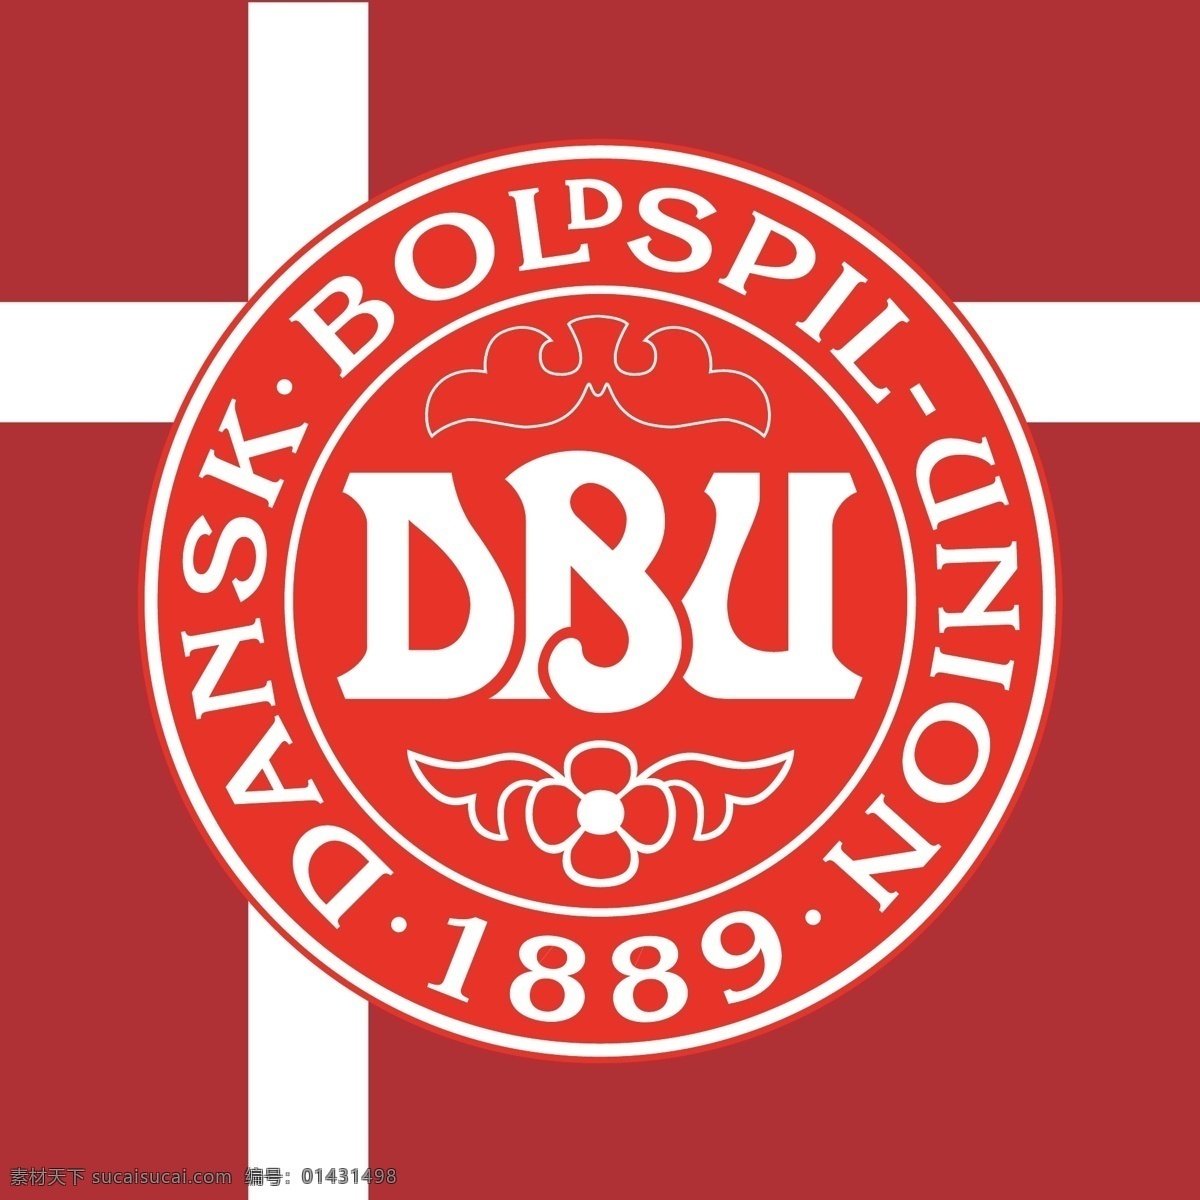 丹麦 国家队 标志 欧洲 北欧 世界杯 欧洲杯 足球 运动 足球标志 logo设计